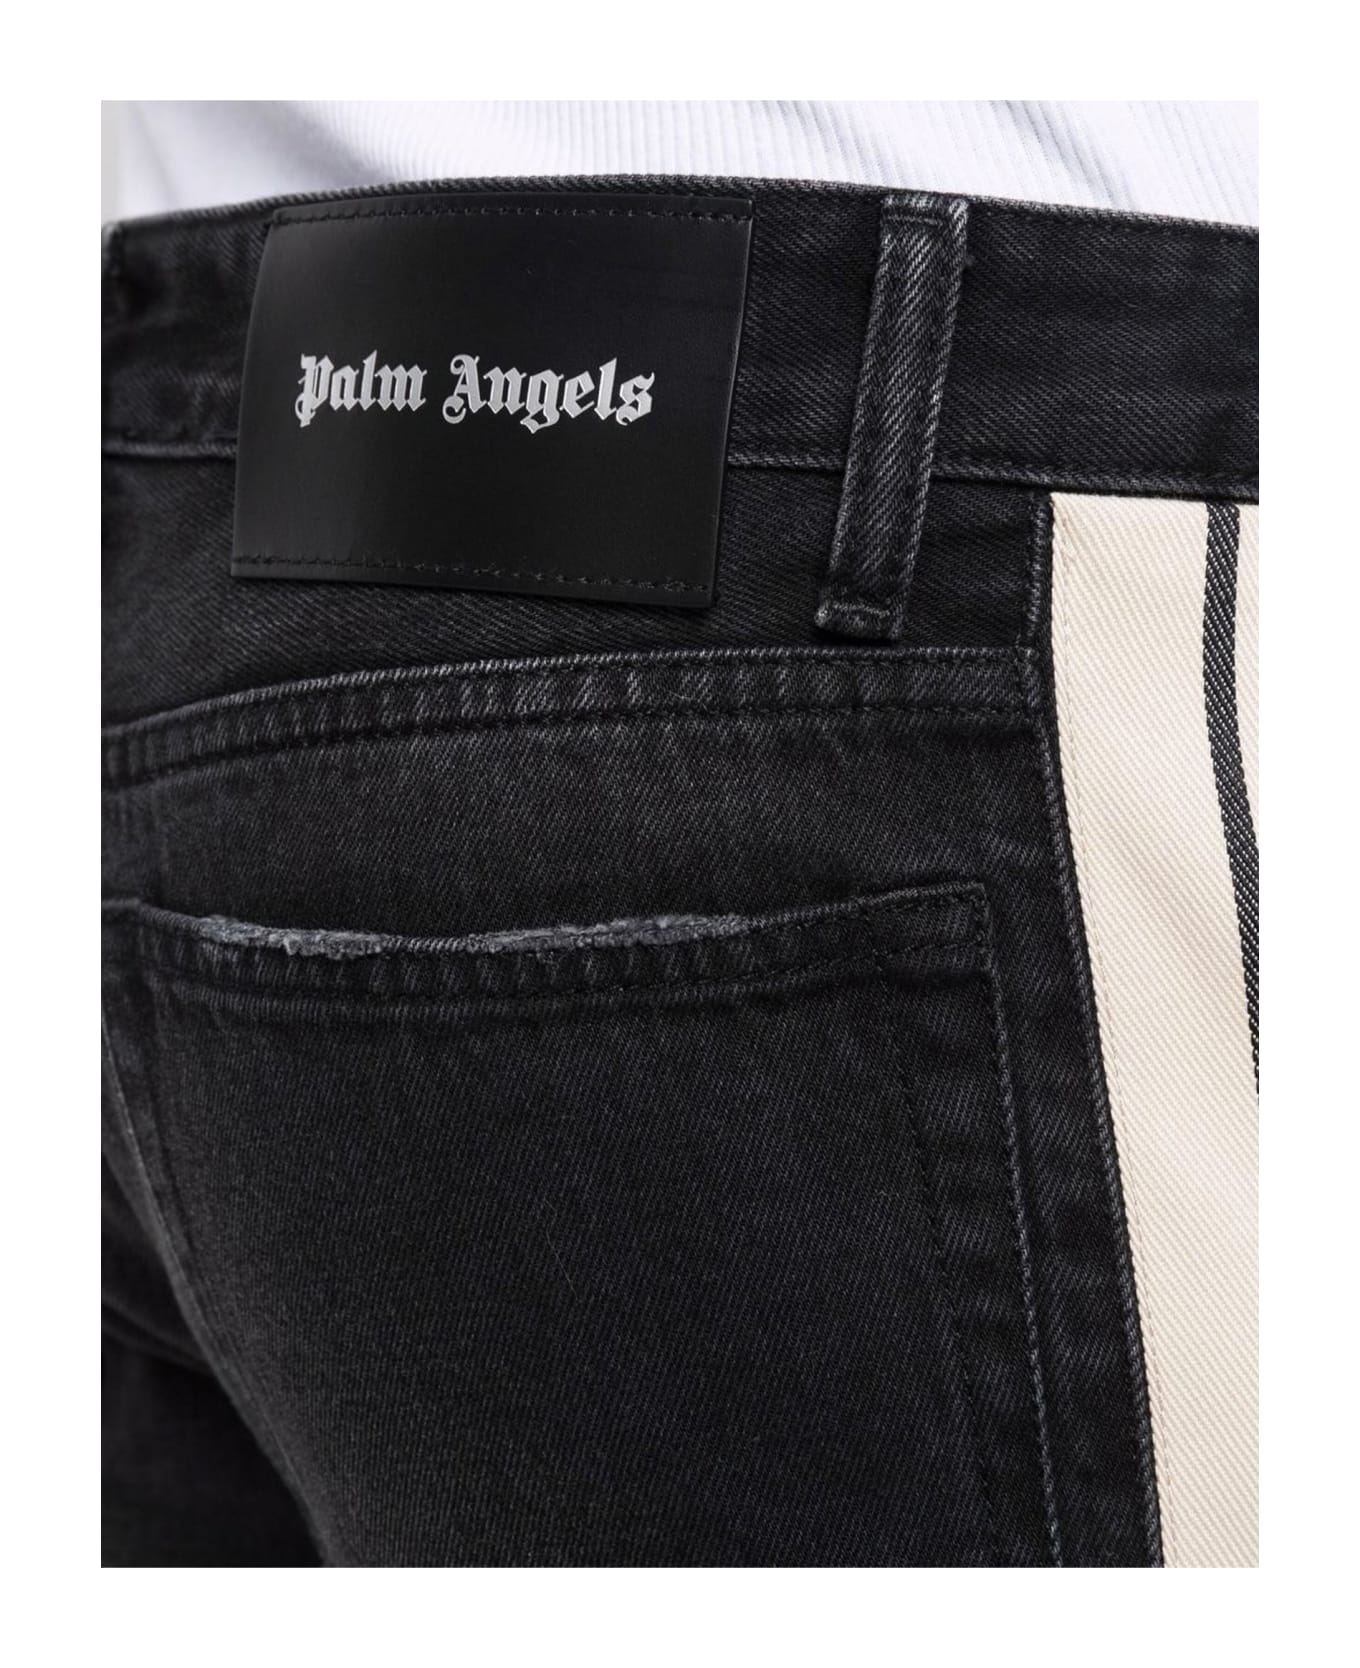 Palm Angels Cotton Denim Jeans - Black